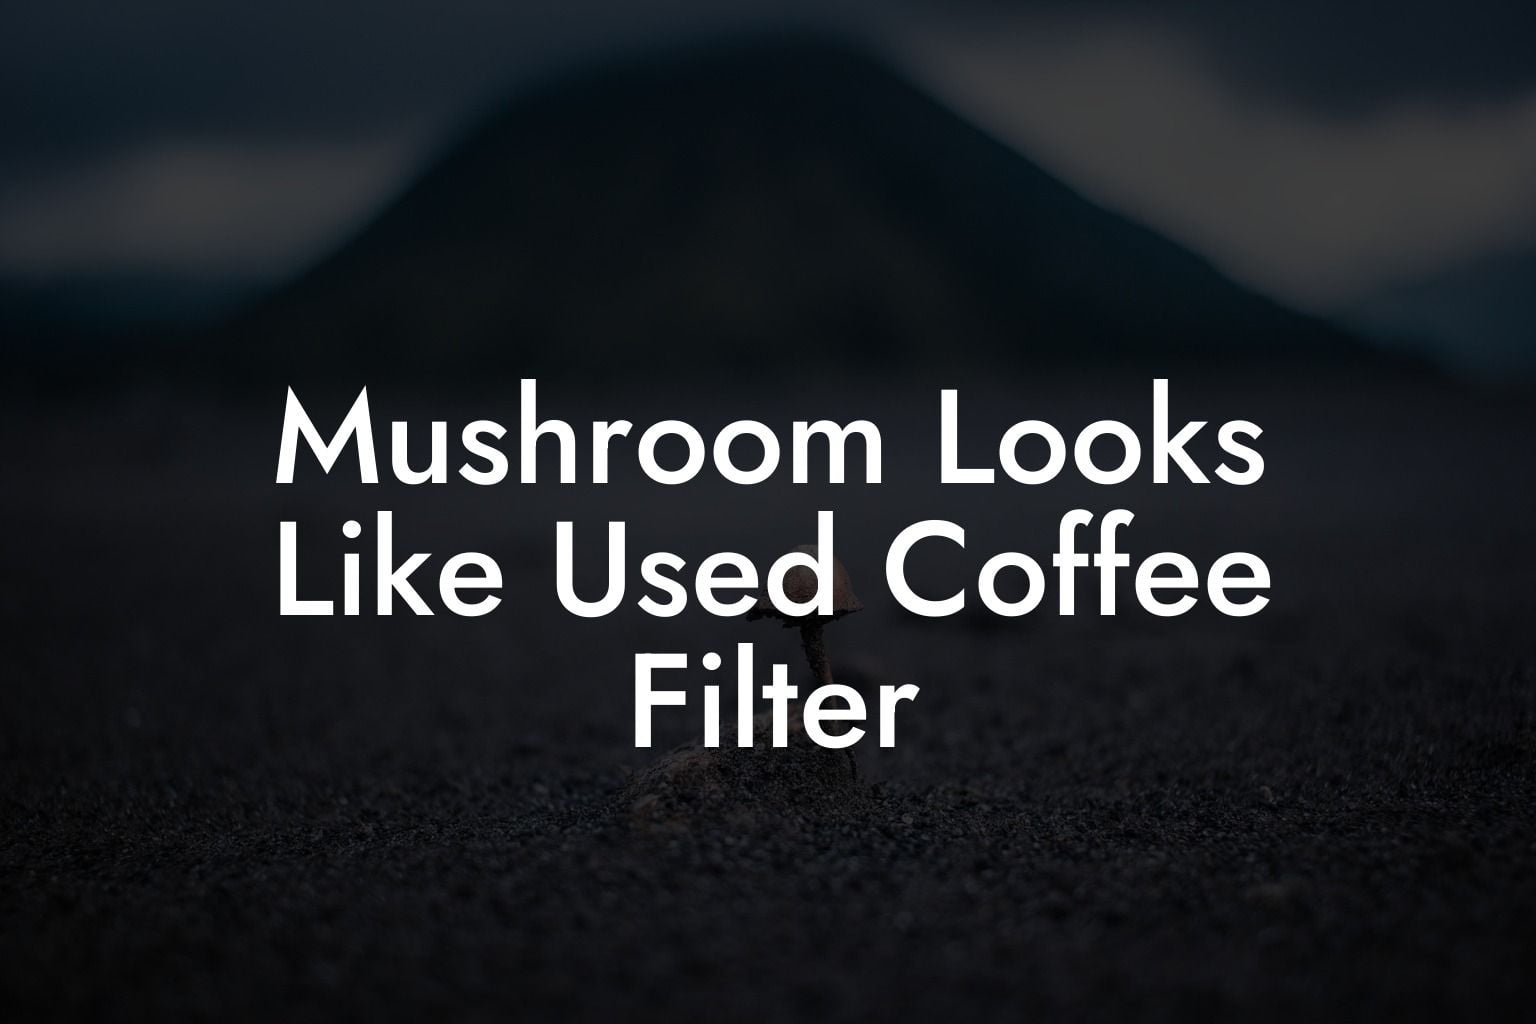 Mushroom Looks Like Used Coffee Filter